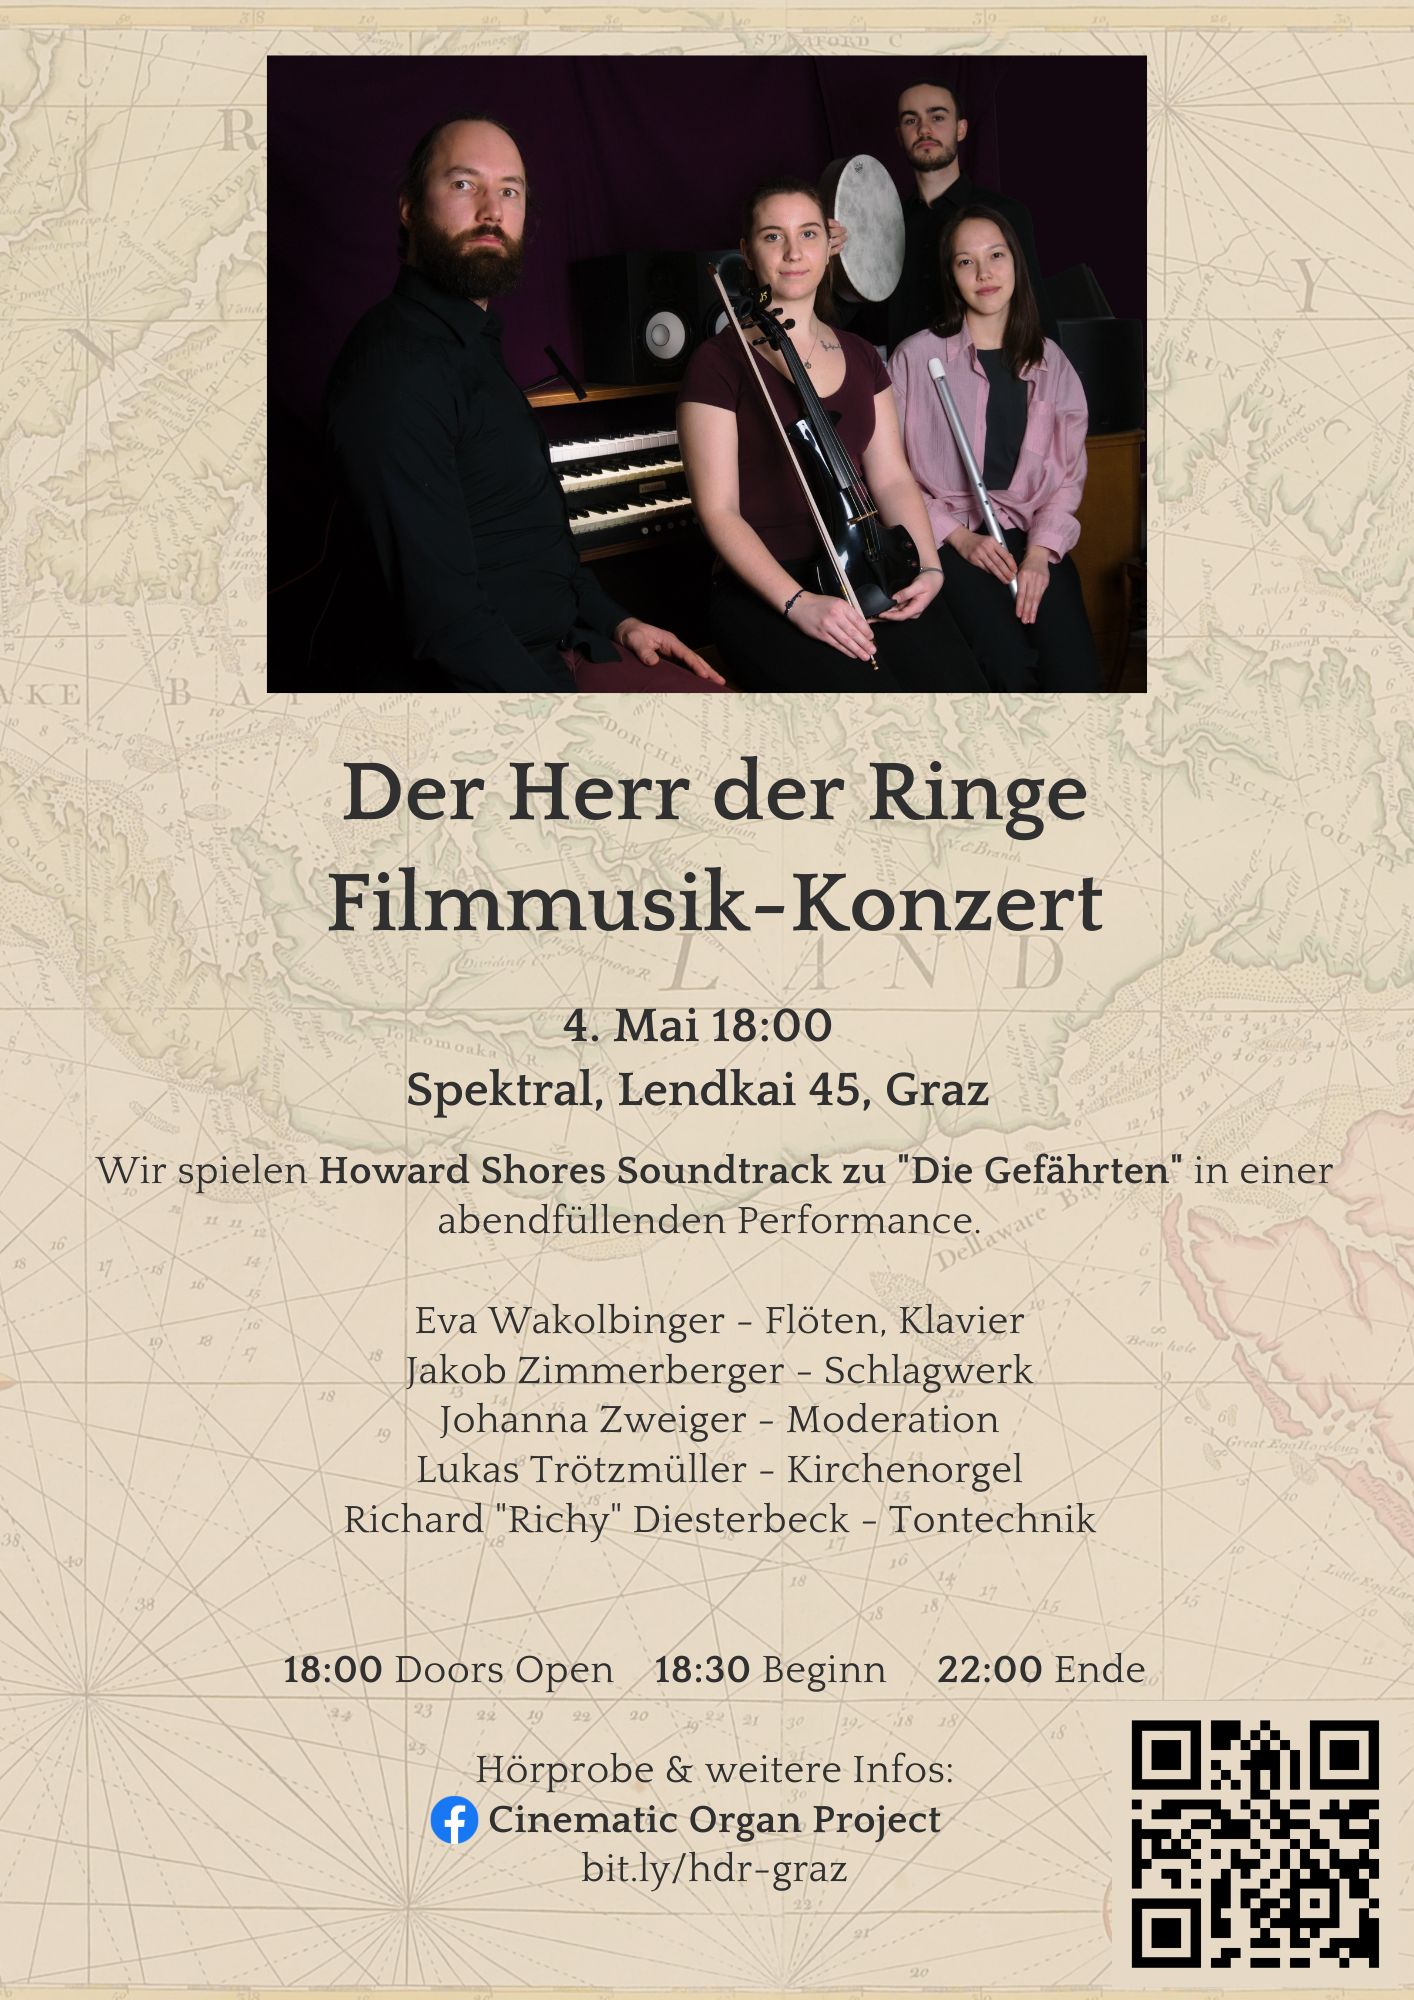 Filmmusik-Konzert “Der Herr der Ringe – Die Gefährten”